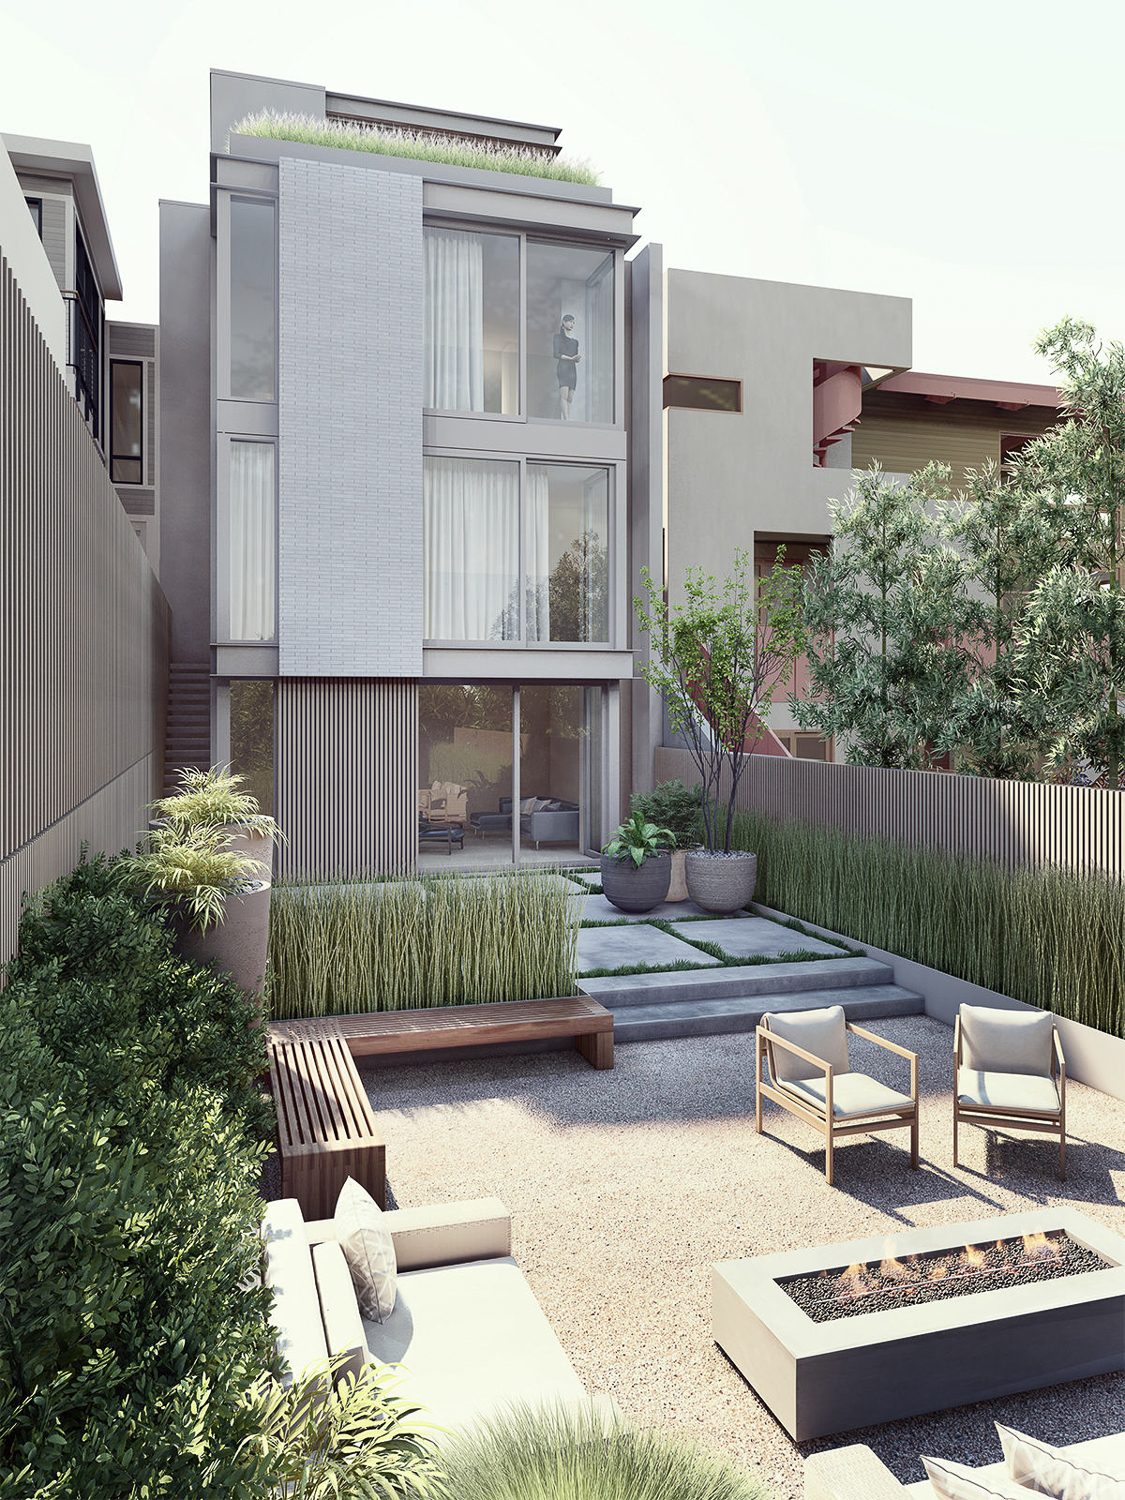 617 Sanchez Street rear yard, rendering by Edmonds + Lee Architects